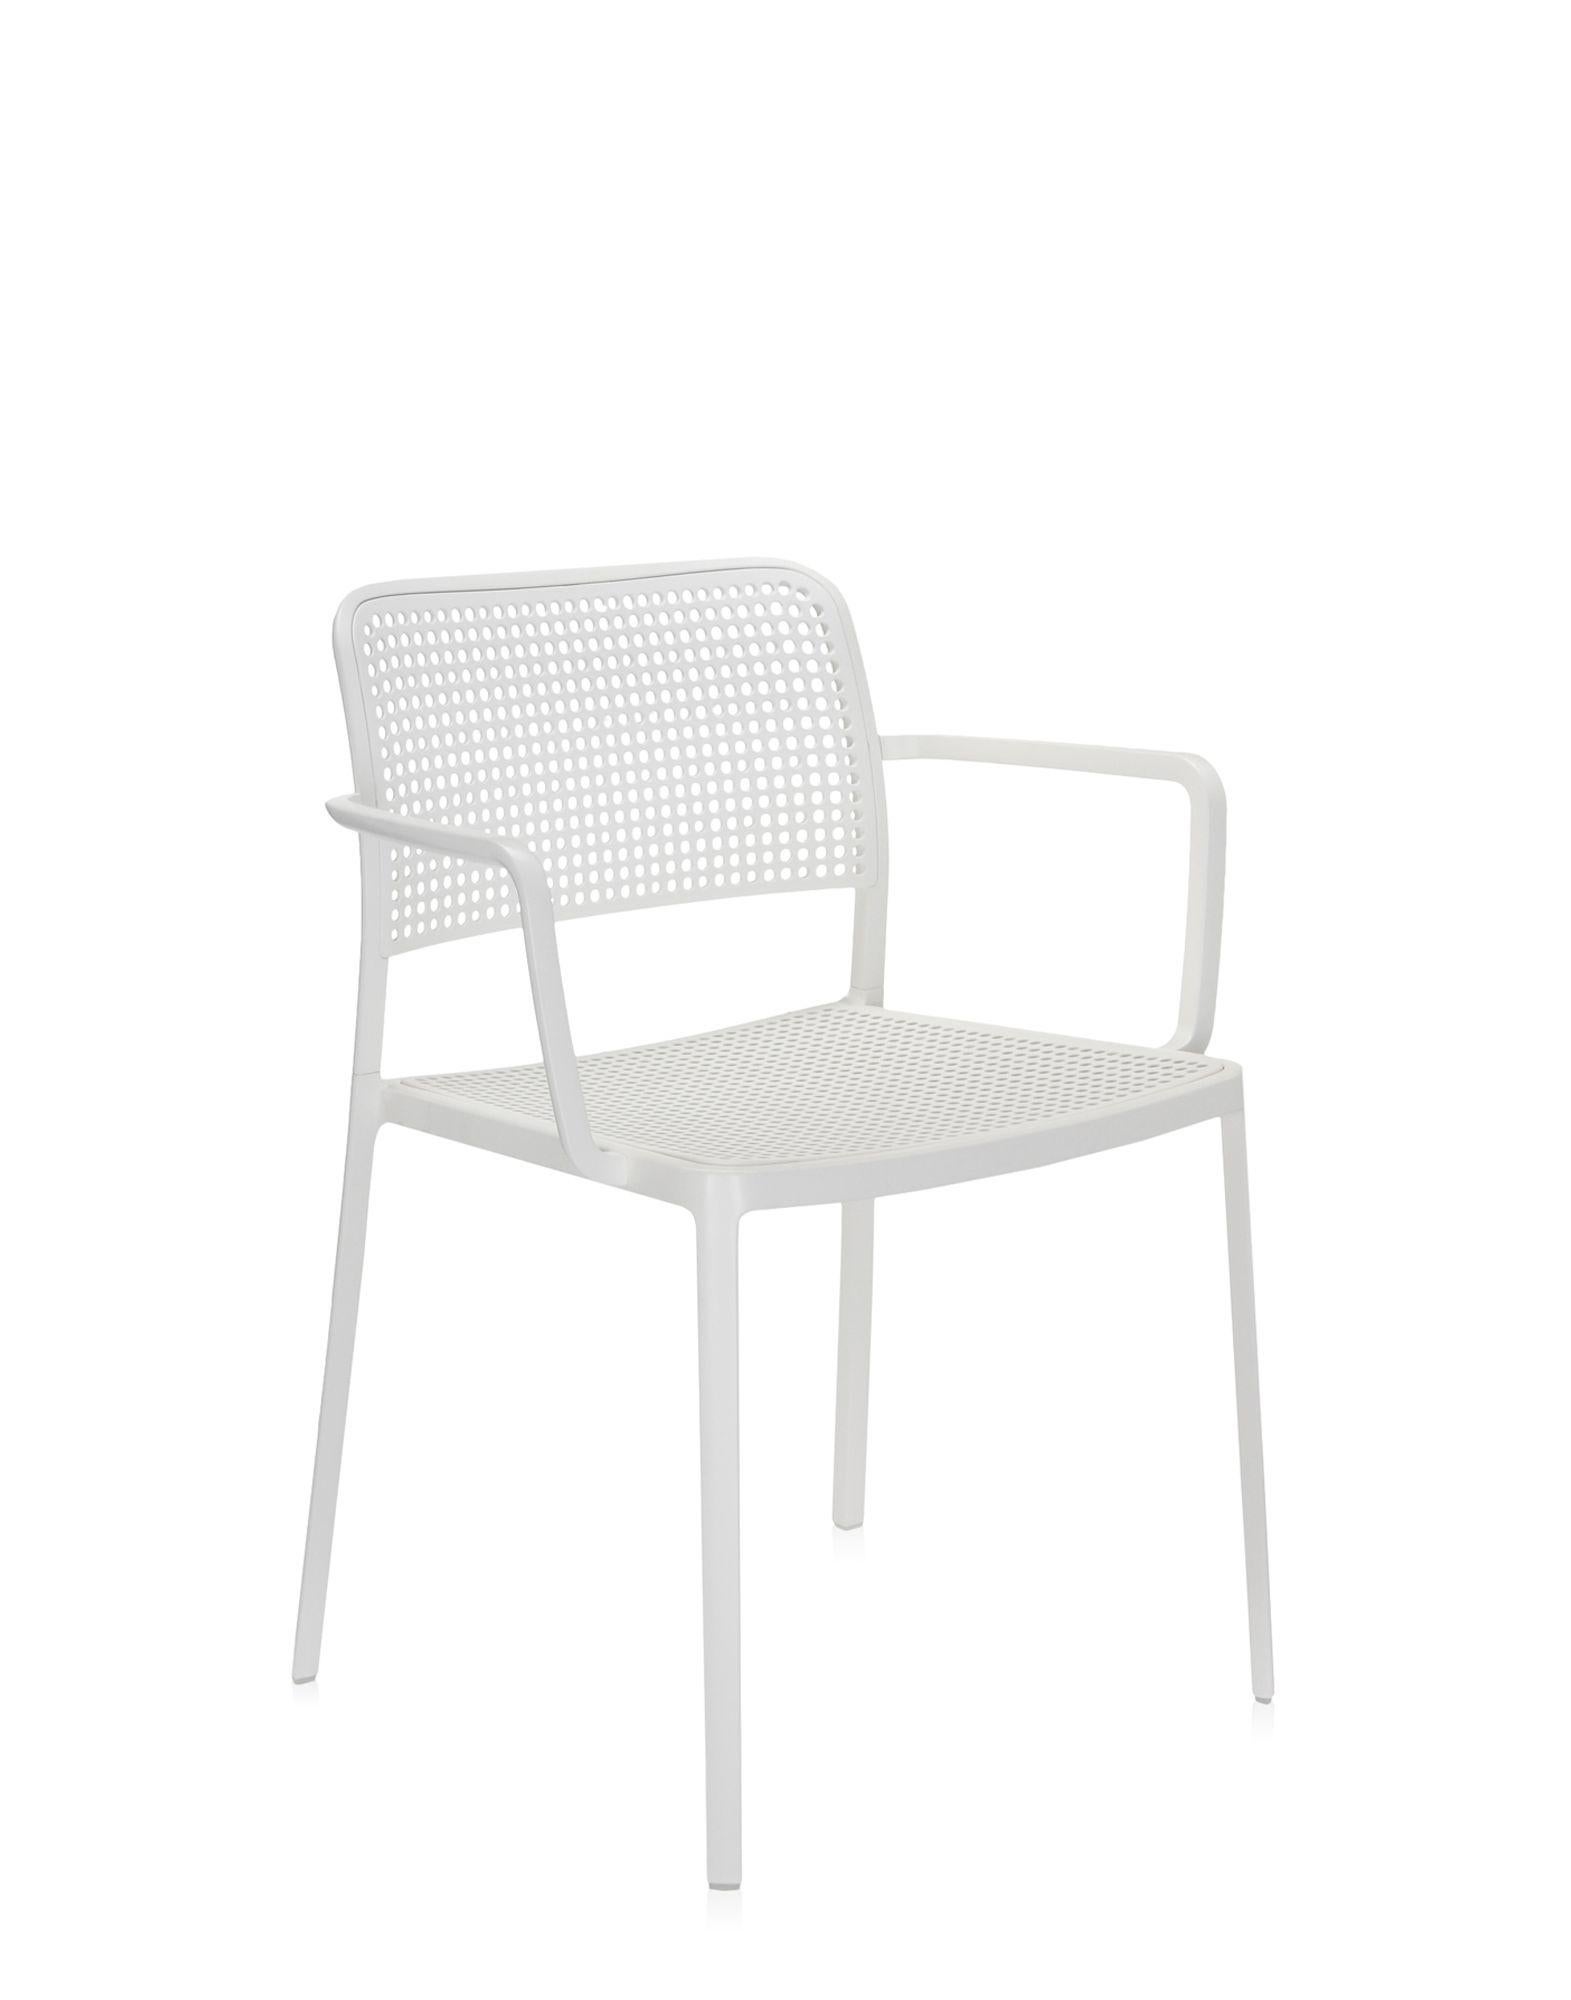 Audrey est une chaise polyvalente et contemporaine qui, grâce à ses lignes simples et épurées obtenues par un procédé spécial de moulage sous pression, est composée de seulement deux parties et réalisée sans soudure. Il est multifonctionnel et